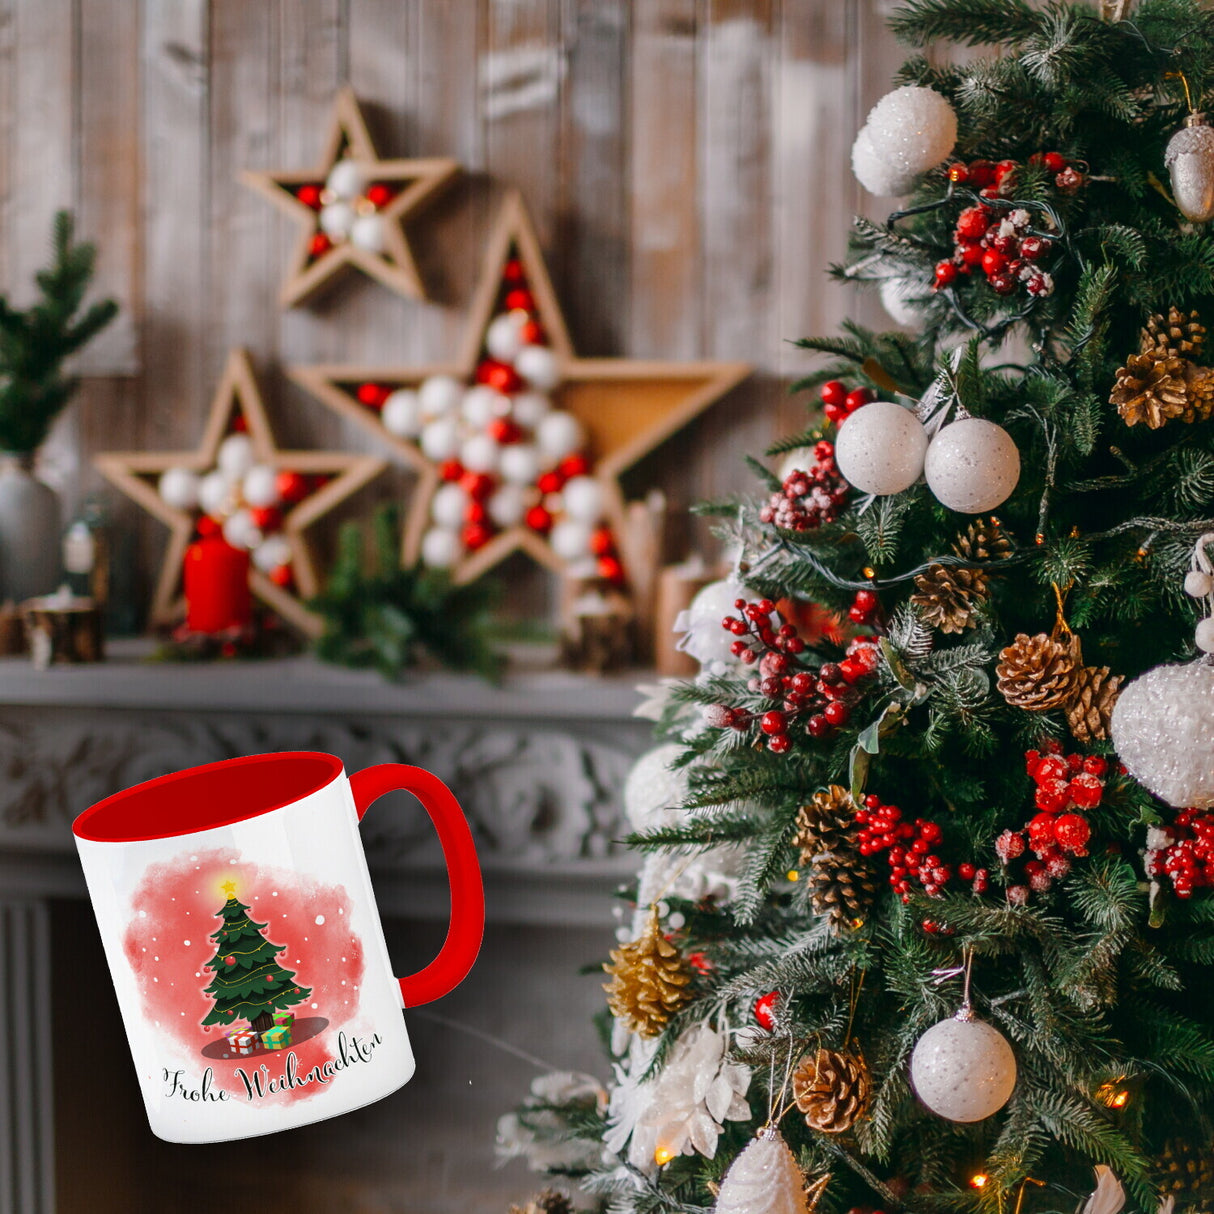 Frohe Weihnachten Kaffeebecher mit andächtigem Weihnachtsbaum